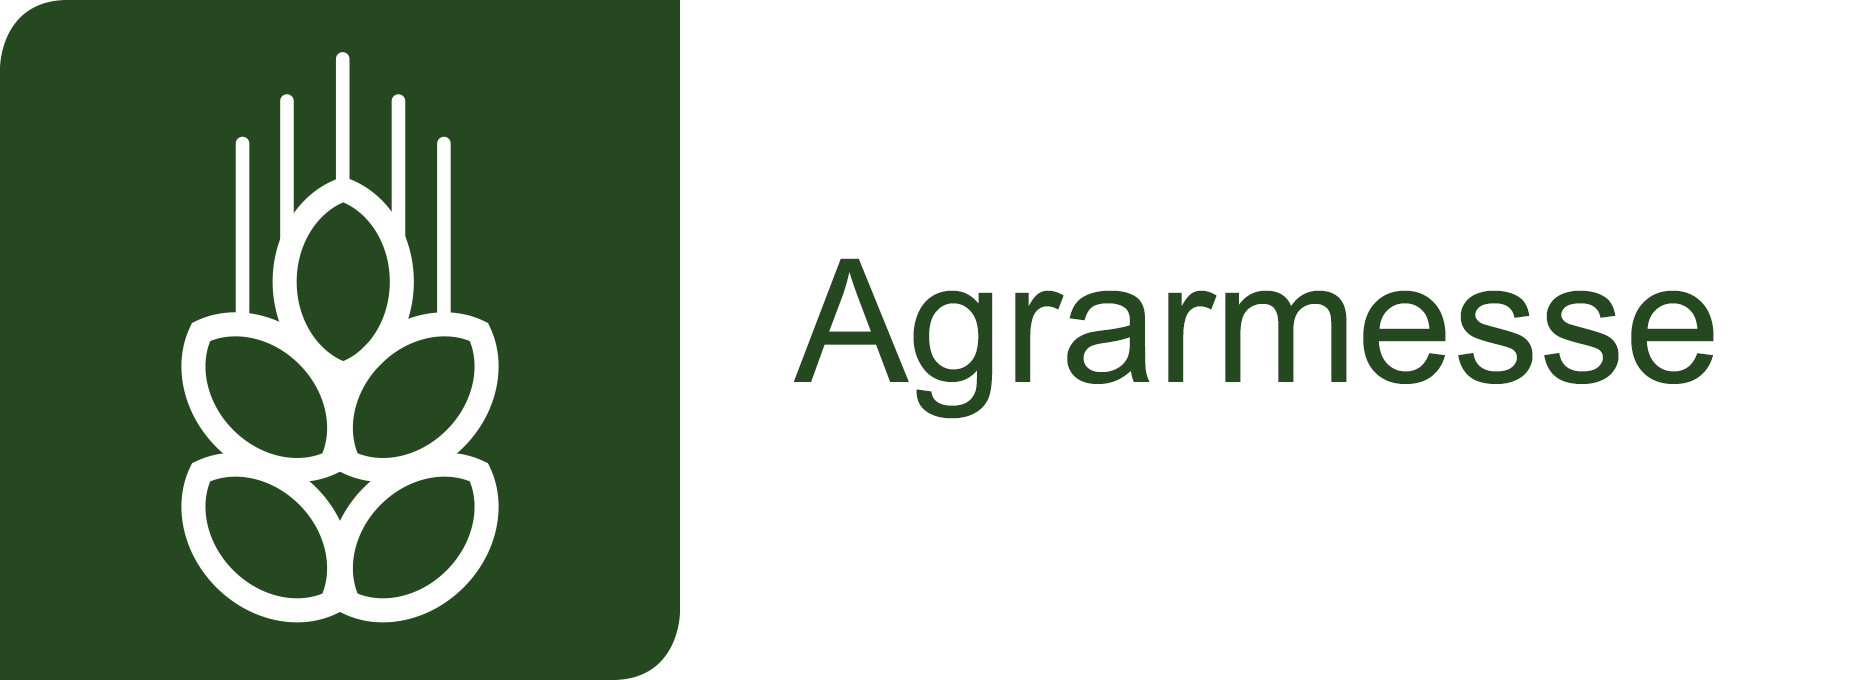 Agrarmesse Alpen-Adria logo